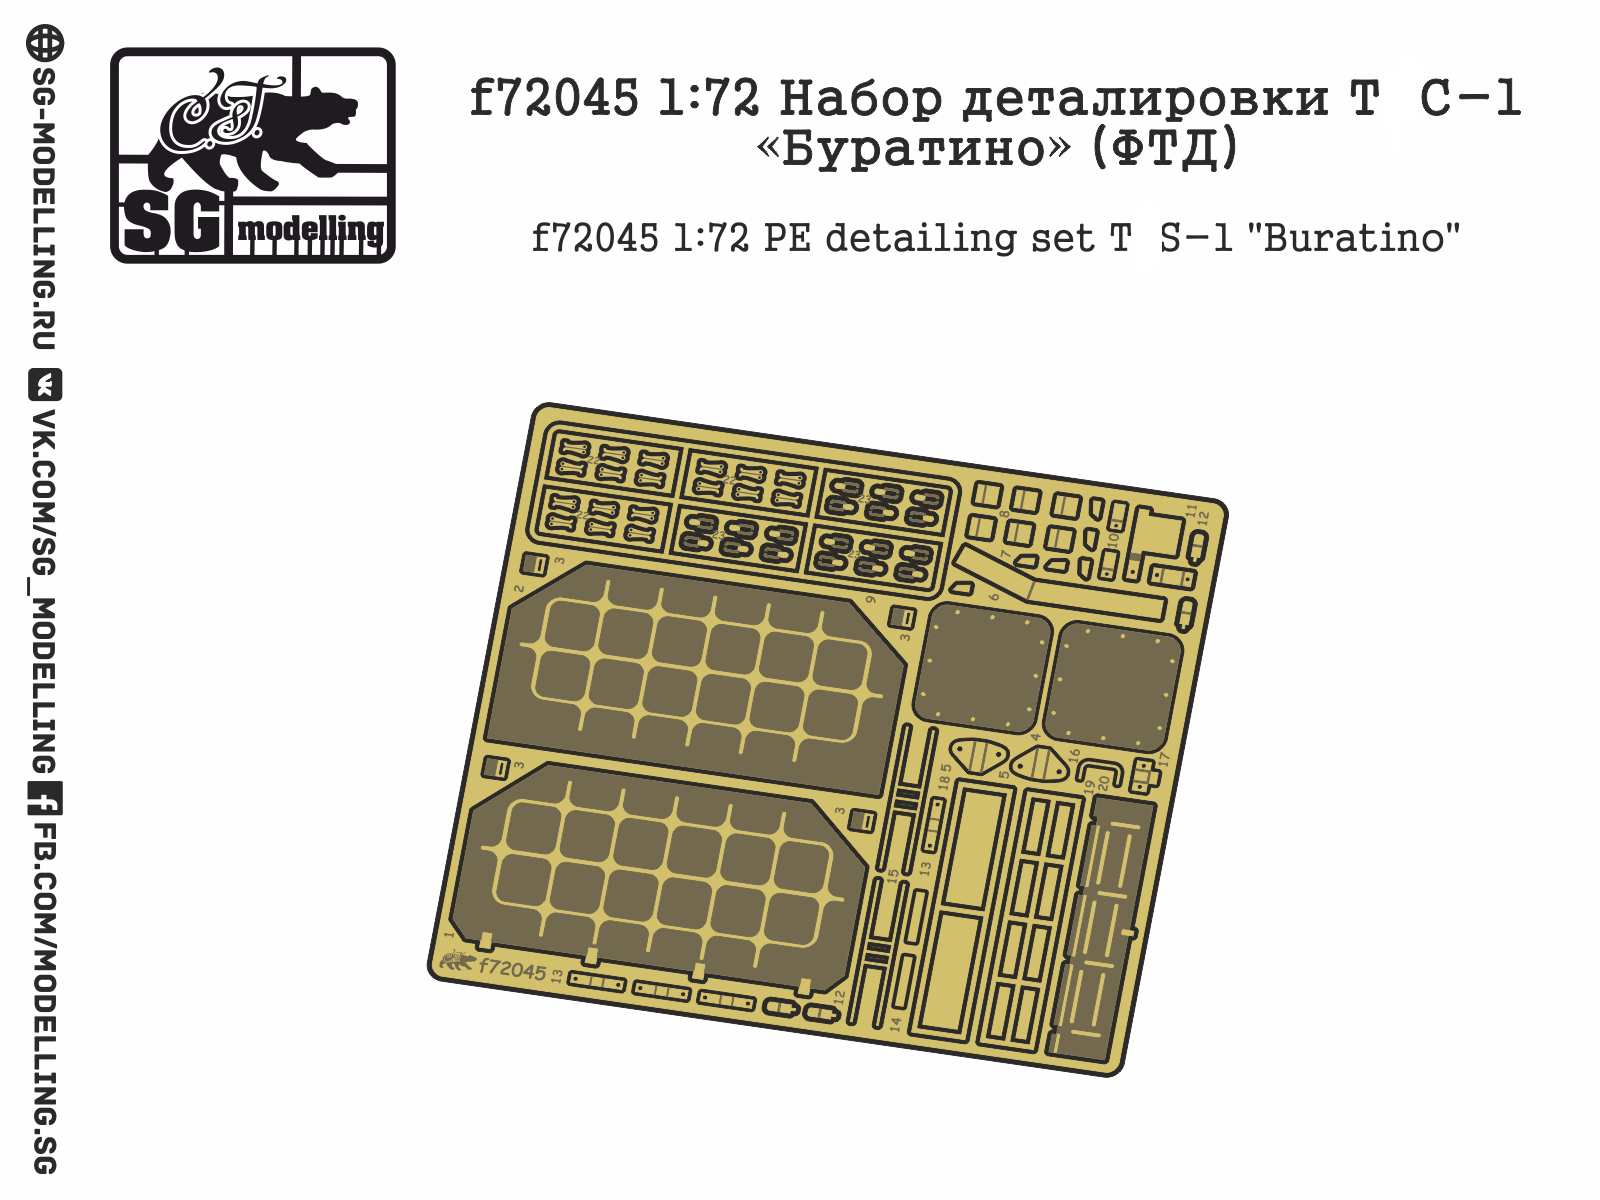 f72045  фототравление  Набор деталировки ТС-1 "Буратино"  (1:72)